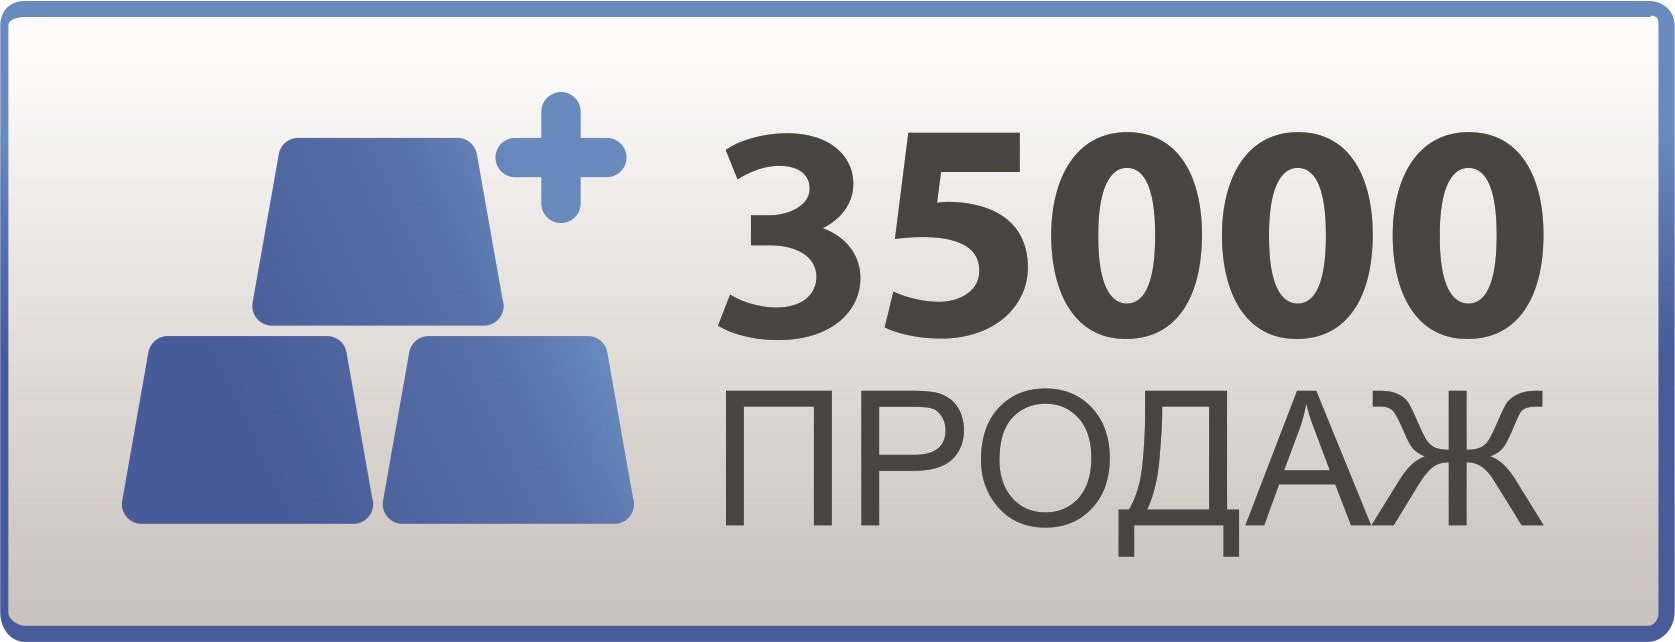 🔥 Yandex Plus Mult subscription - for 15 months 🔥💳0%